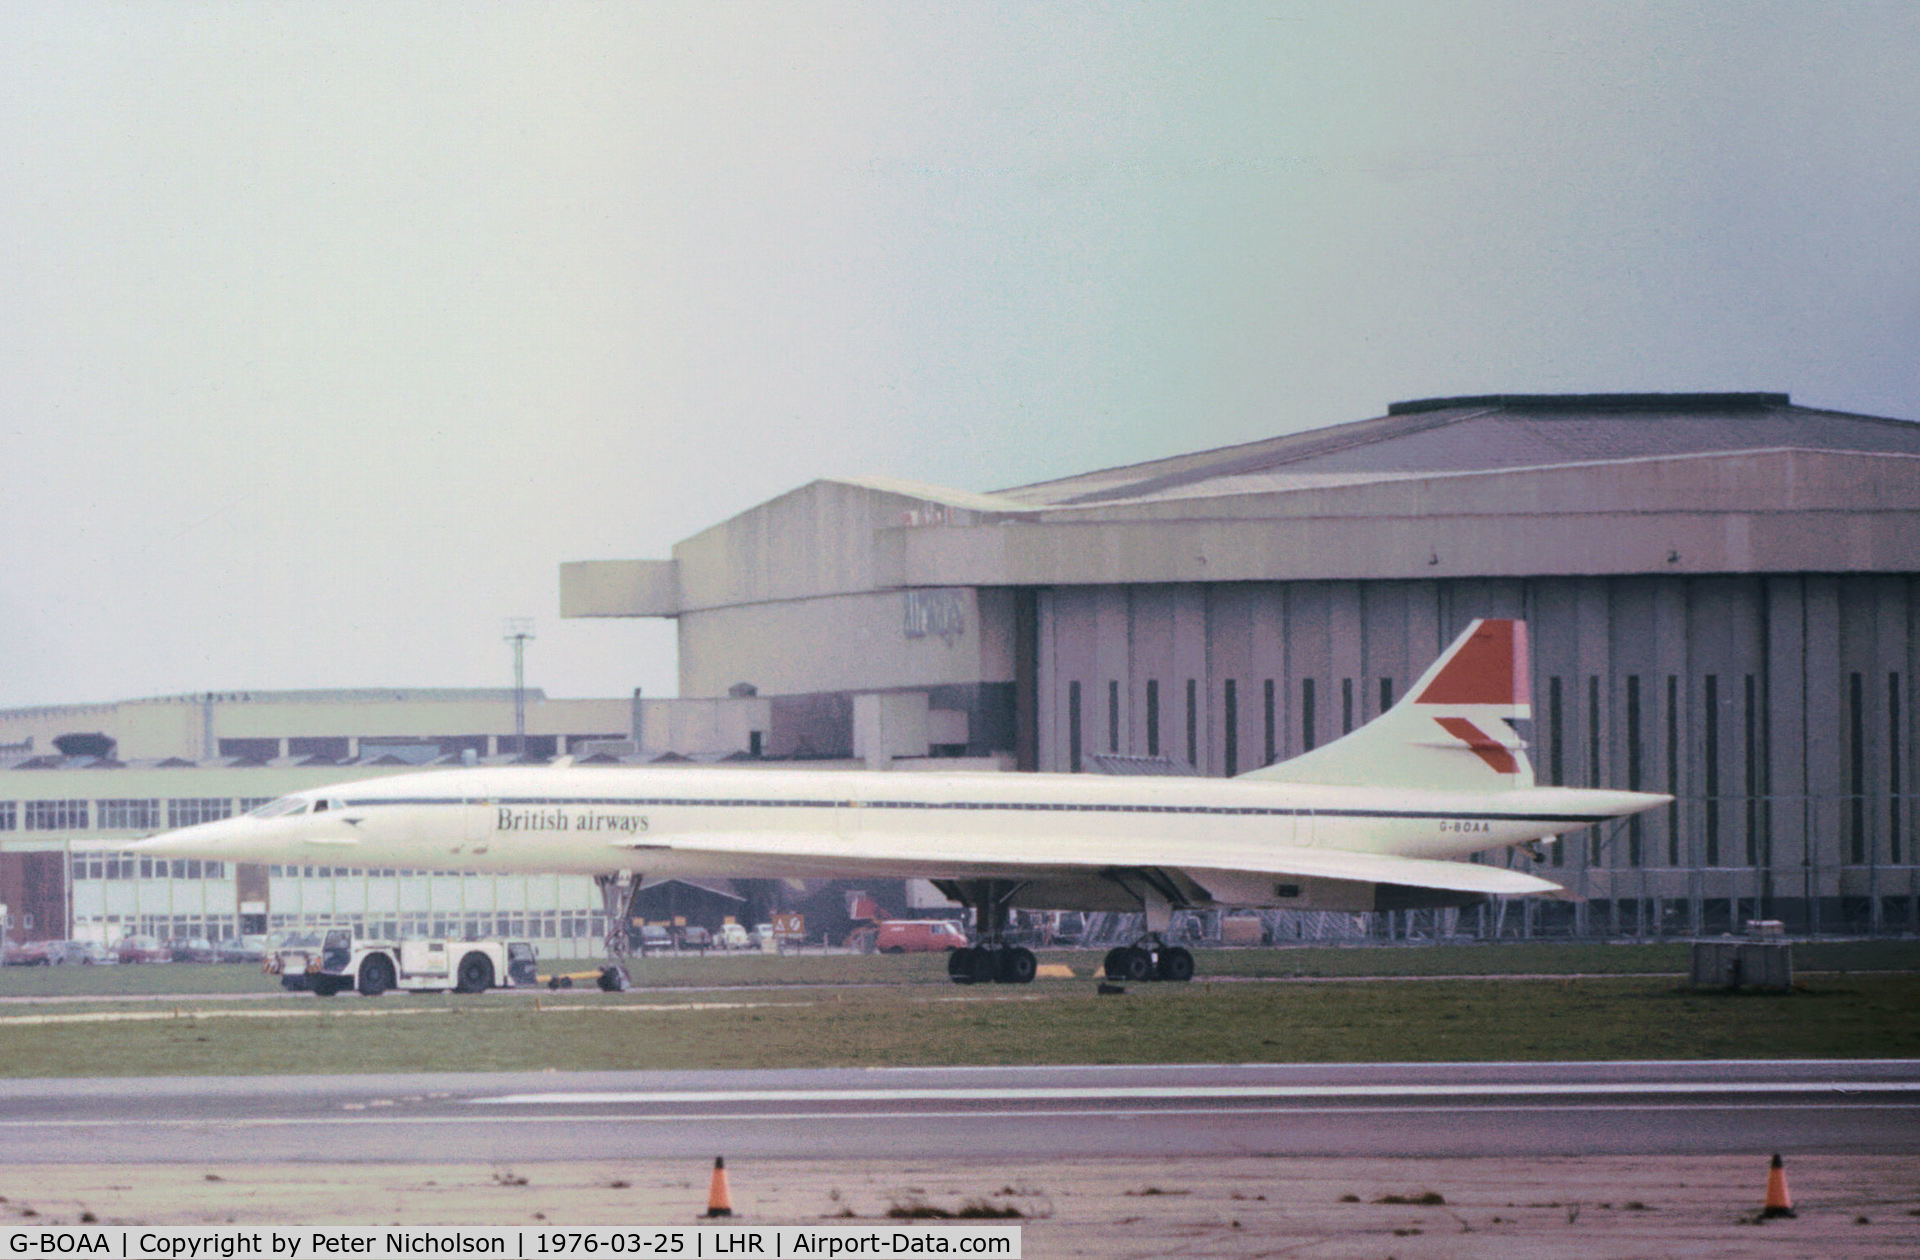 G-BOAA, 1974 Aerospatiale-BAC Concorde 1-102 C/N 100-006, Concorde 102 of British Airways seen at Heathrow in March 1976.